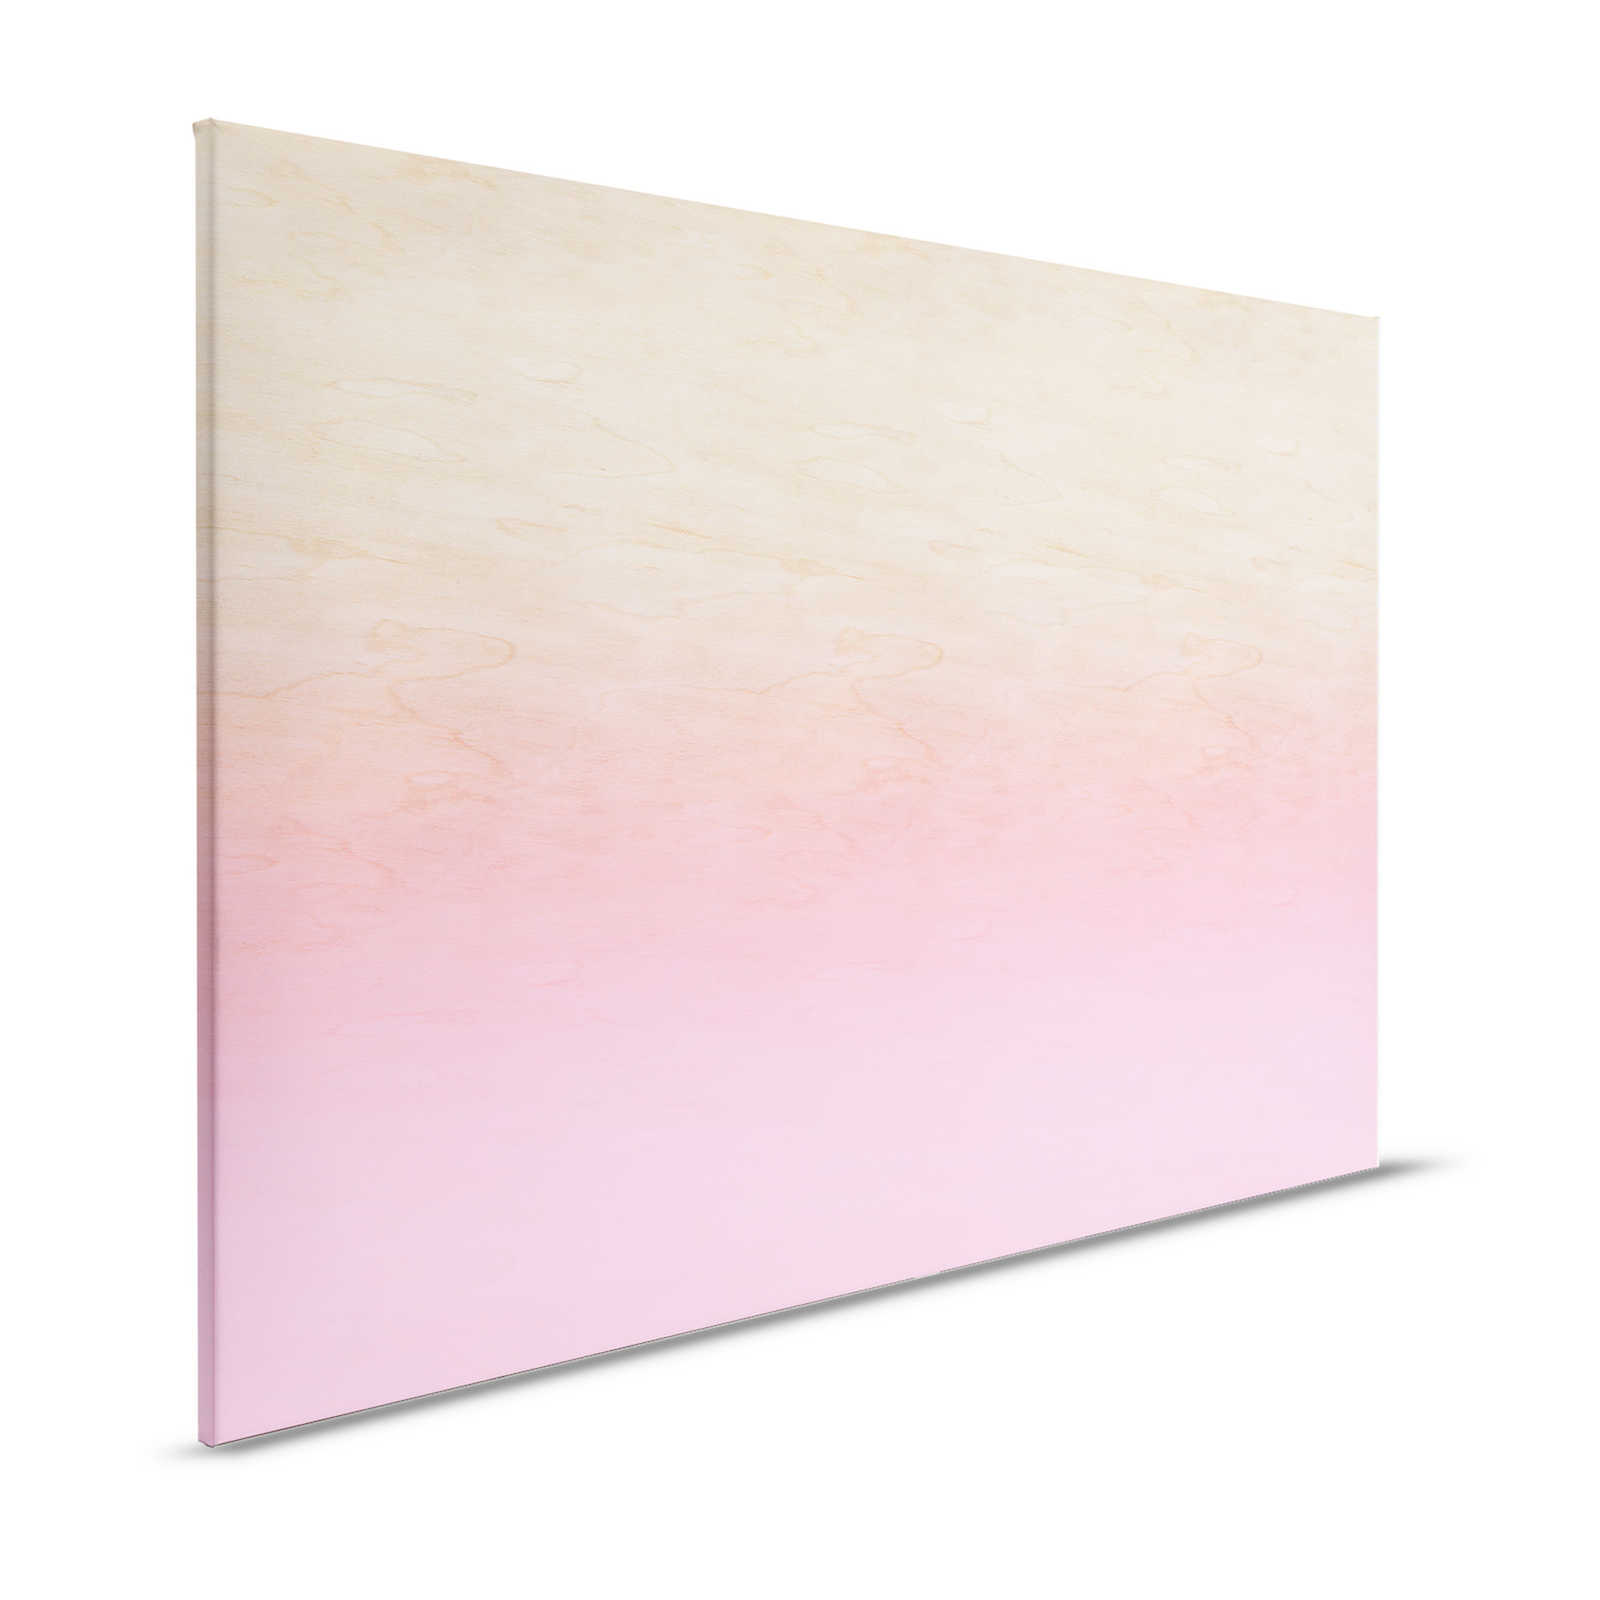 Laboratorio 1 - Pittura su tela Effetto Ombre rosa e venature del legno - 1,20 m x 0,80 m
